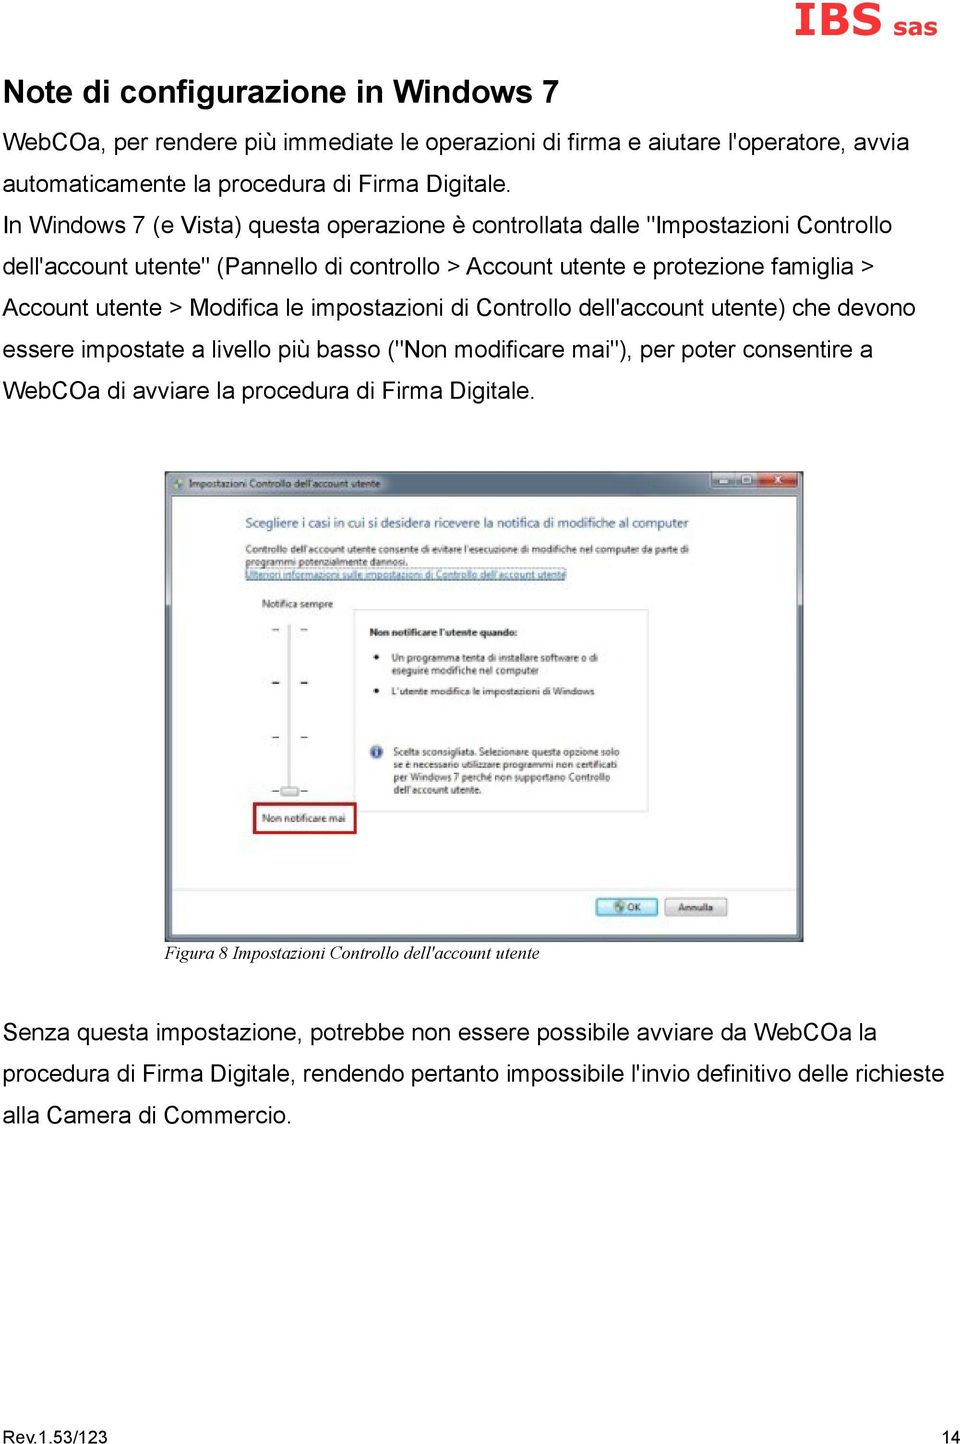 impostazioni di Controllo dell'account utente) che devono essere impostate a livello più basso ("Non modificare mai"), per poter consentire a WebCOa di avviare la procedura di Firma Digitale.